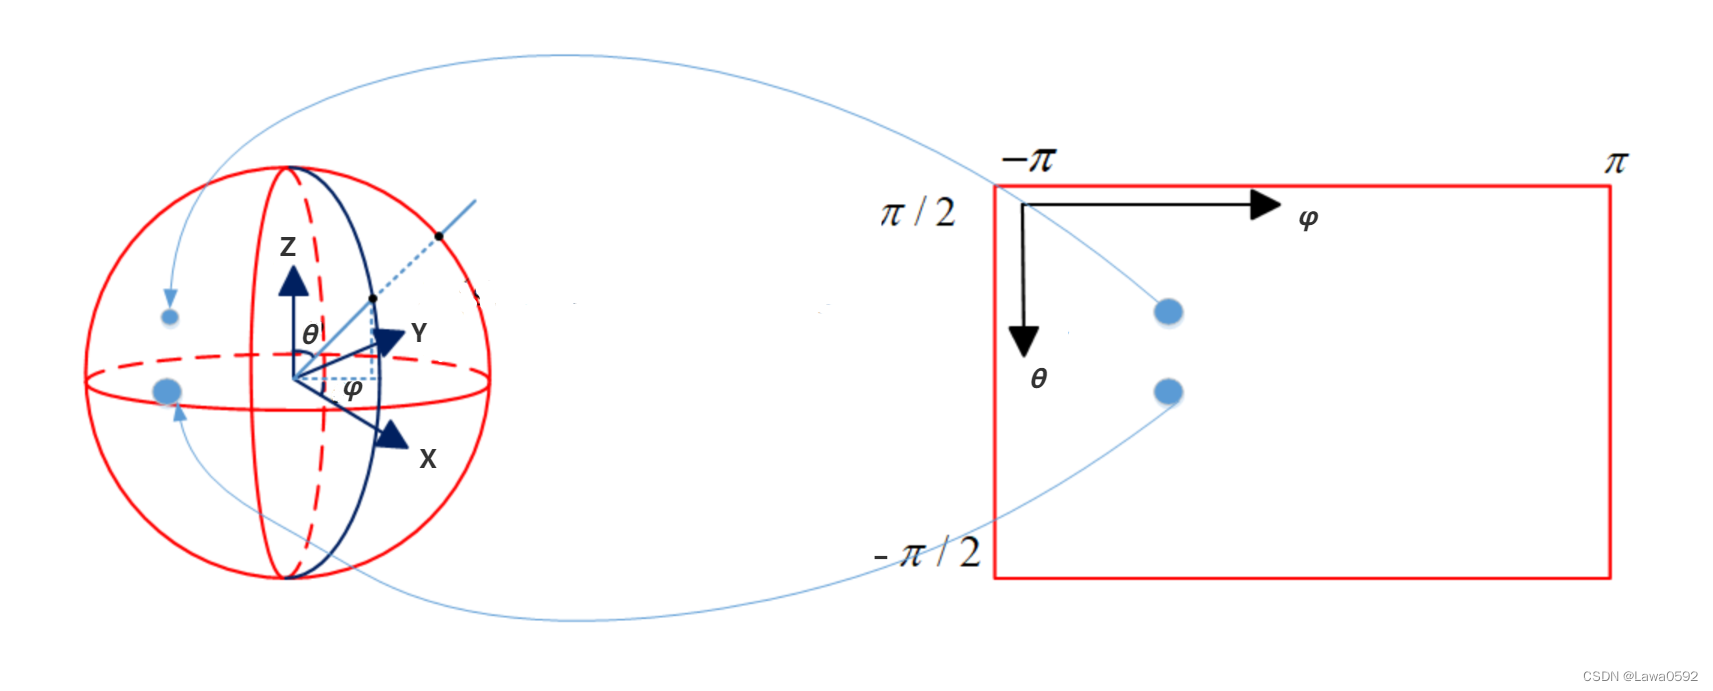 全景图二维坐标与球面坐标系的对应关系